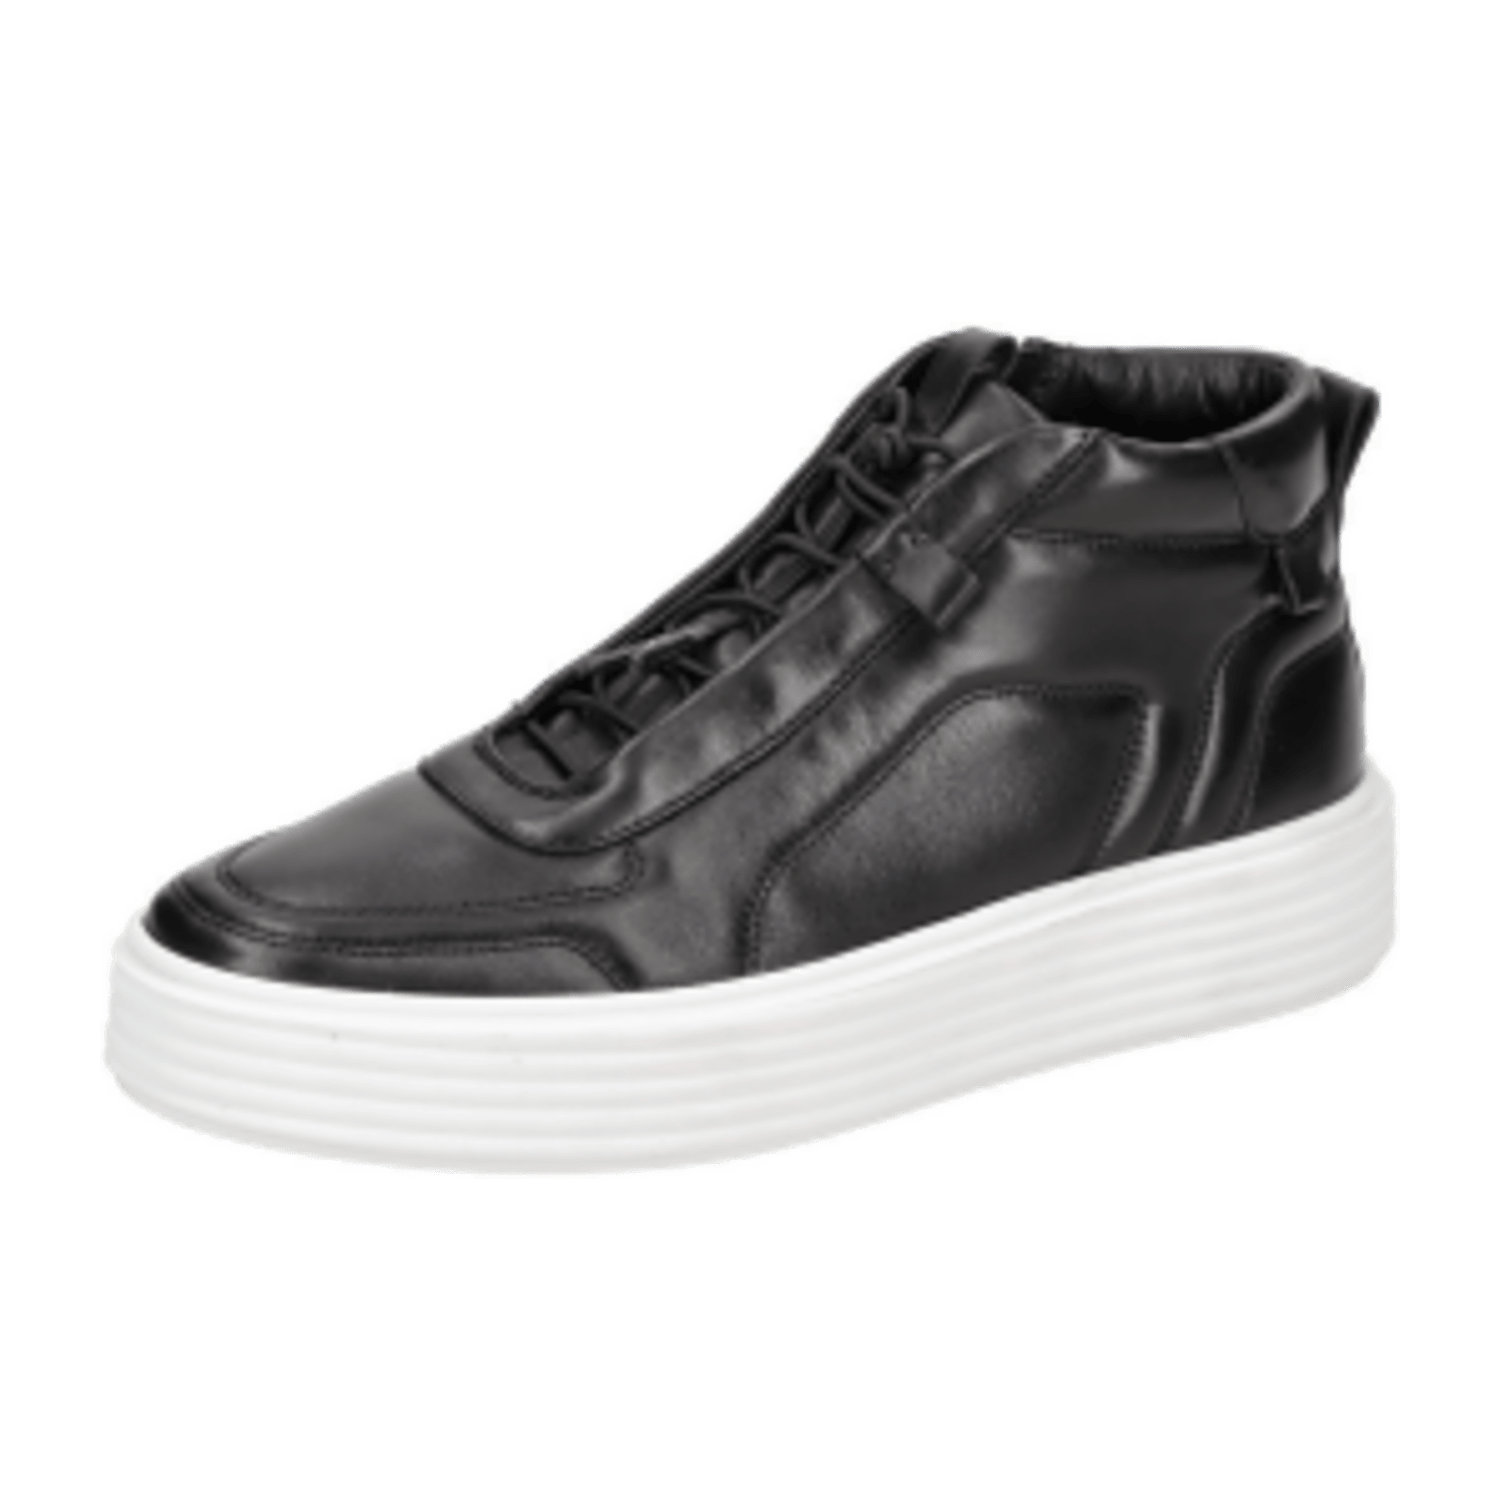 Kennel + Schmenger K&S Wonder Schuhe Sneakers Plateau schwarz 14160